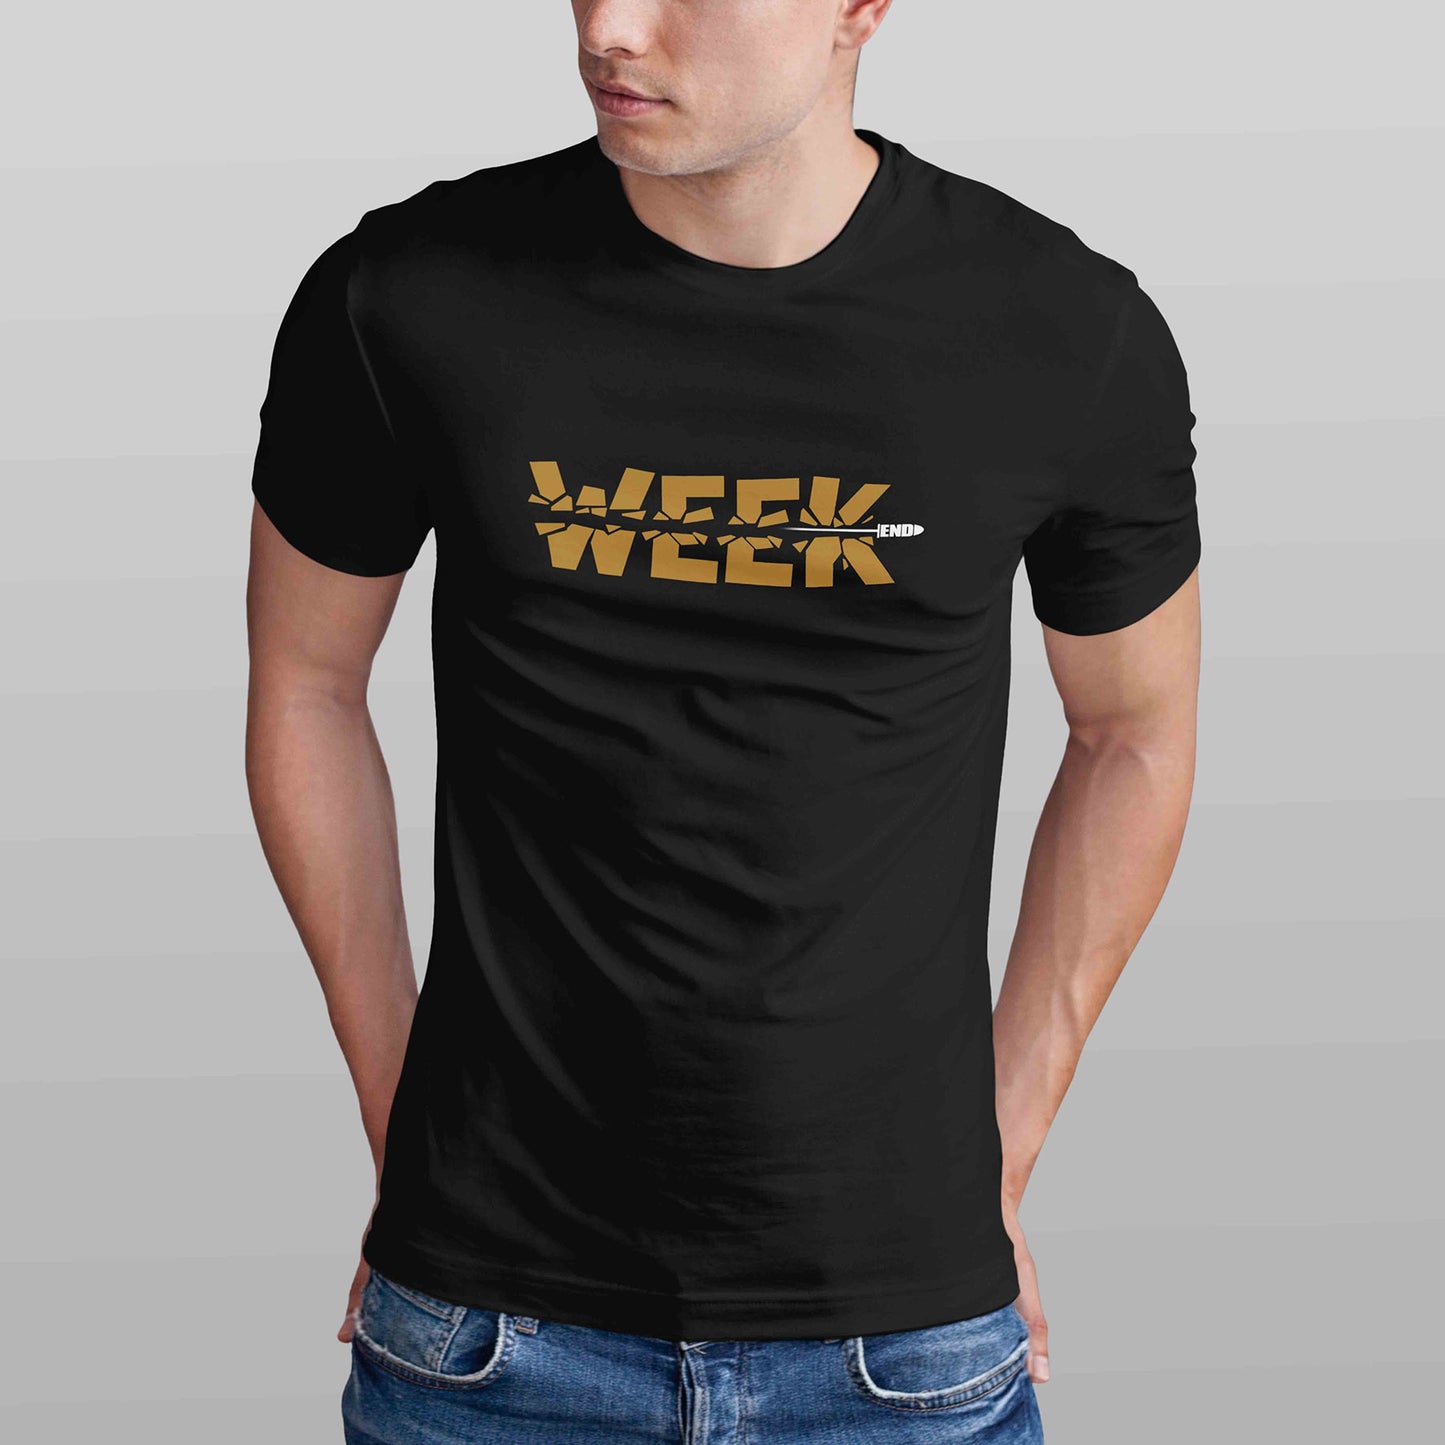 Week End Men's T-shirt